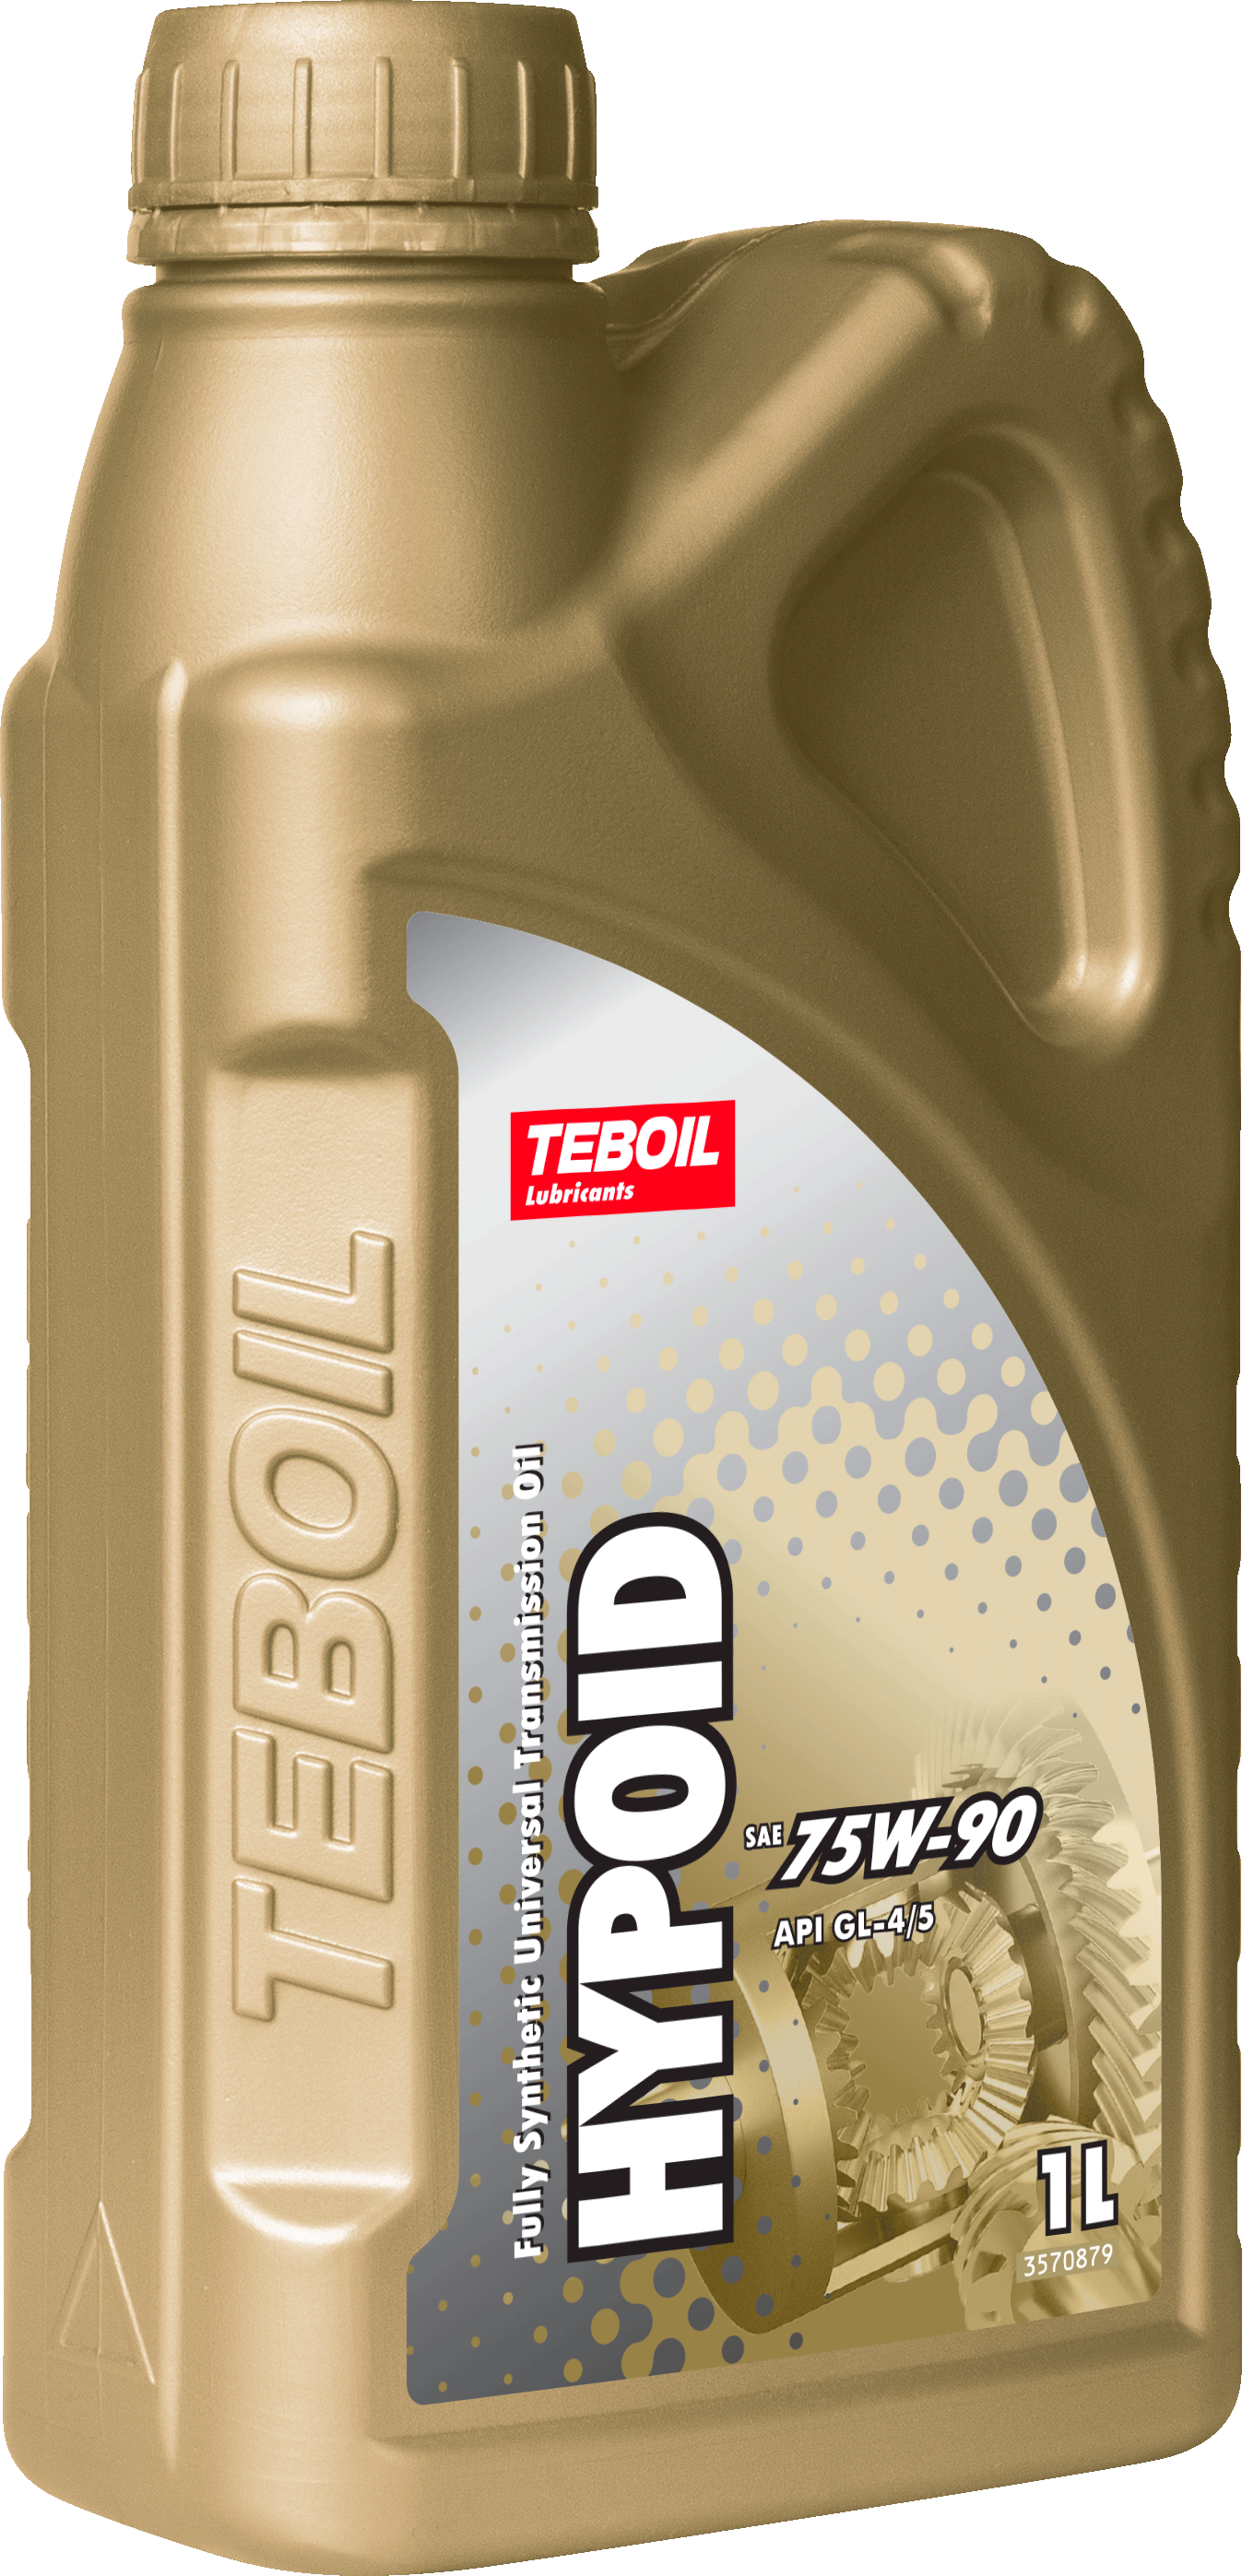 Трансмиссионное масло TEBOIL HYPOID 75W-90